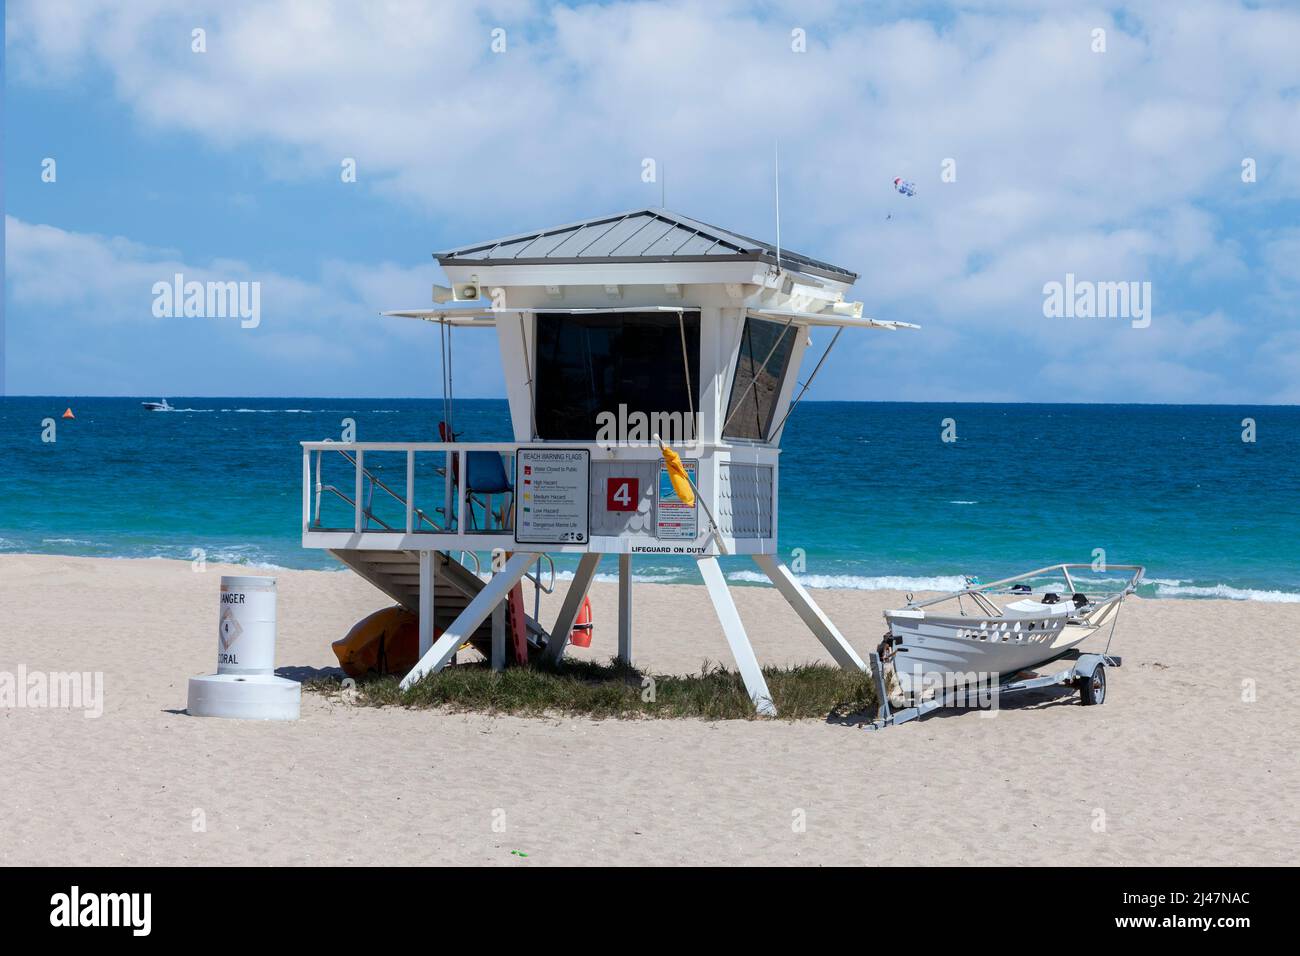 Pi. Lauderdale, Floride. Scène de plage. Shack du maître-nageur, ParaSailer en arrière-plan. Banque D'Images